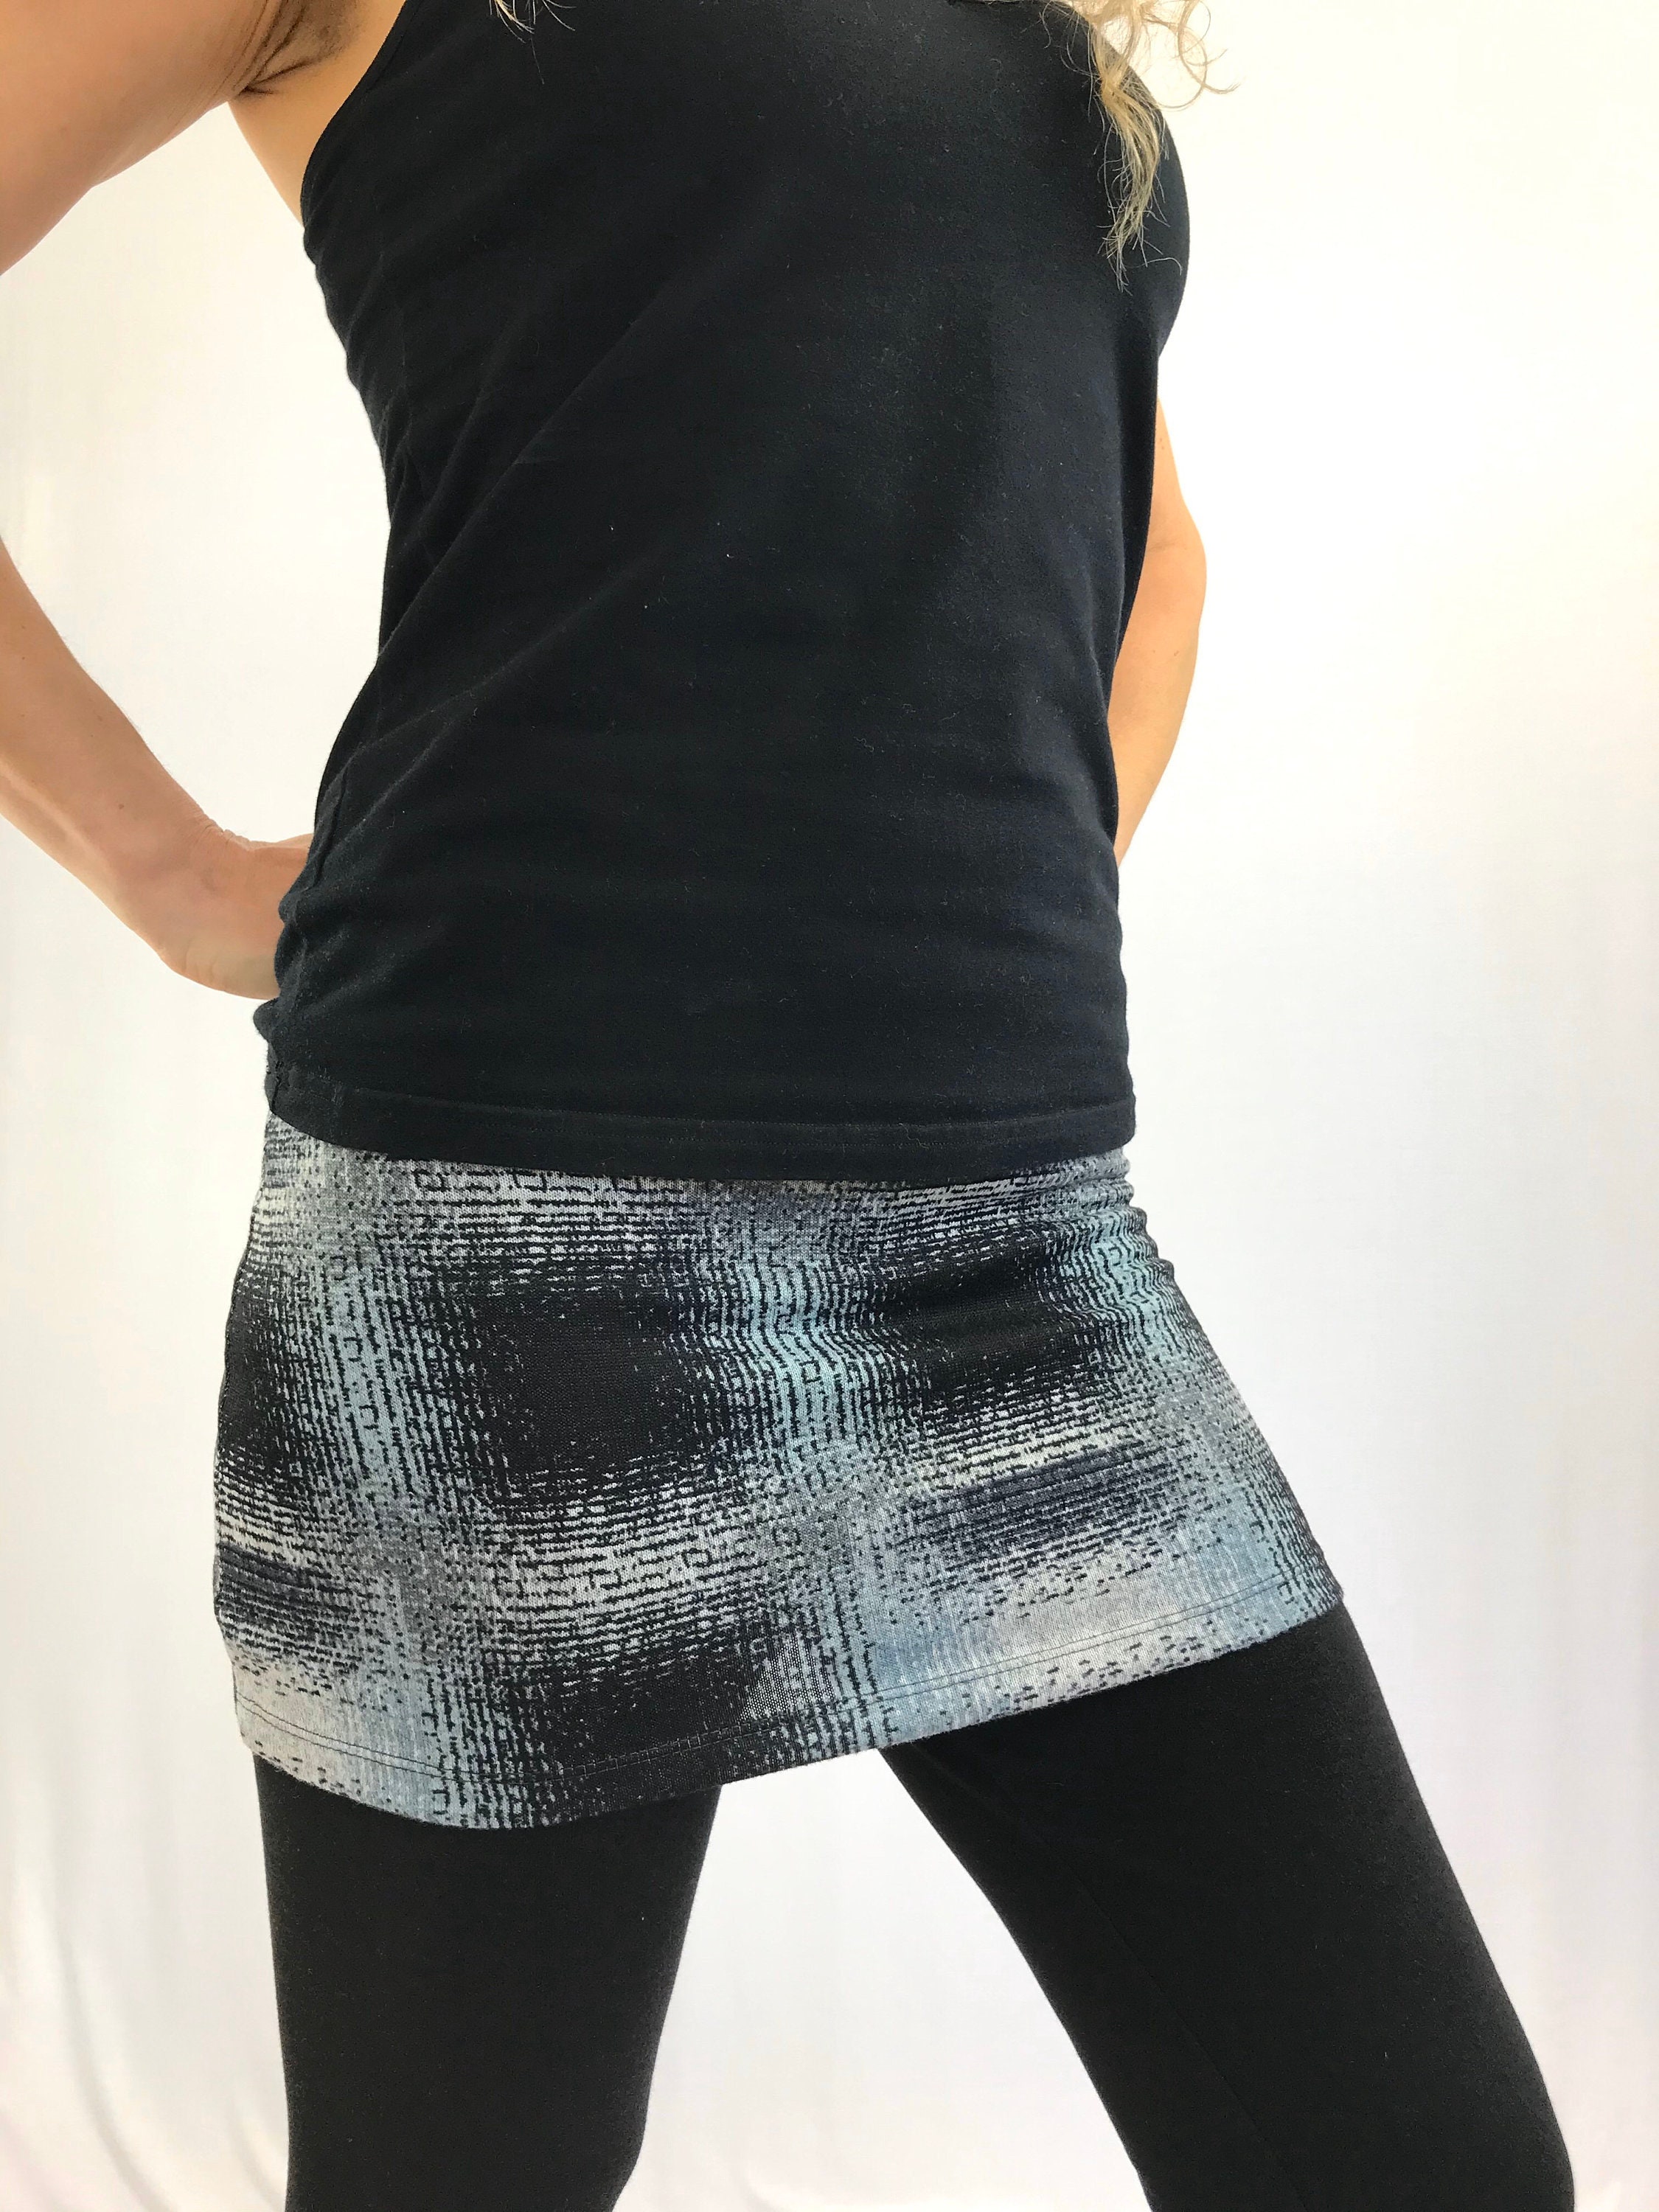 Martine Plaid Sweater Knit Ski Bum - over-skirt for leggings